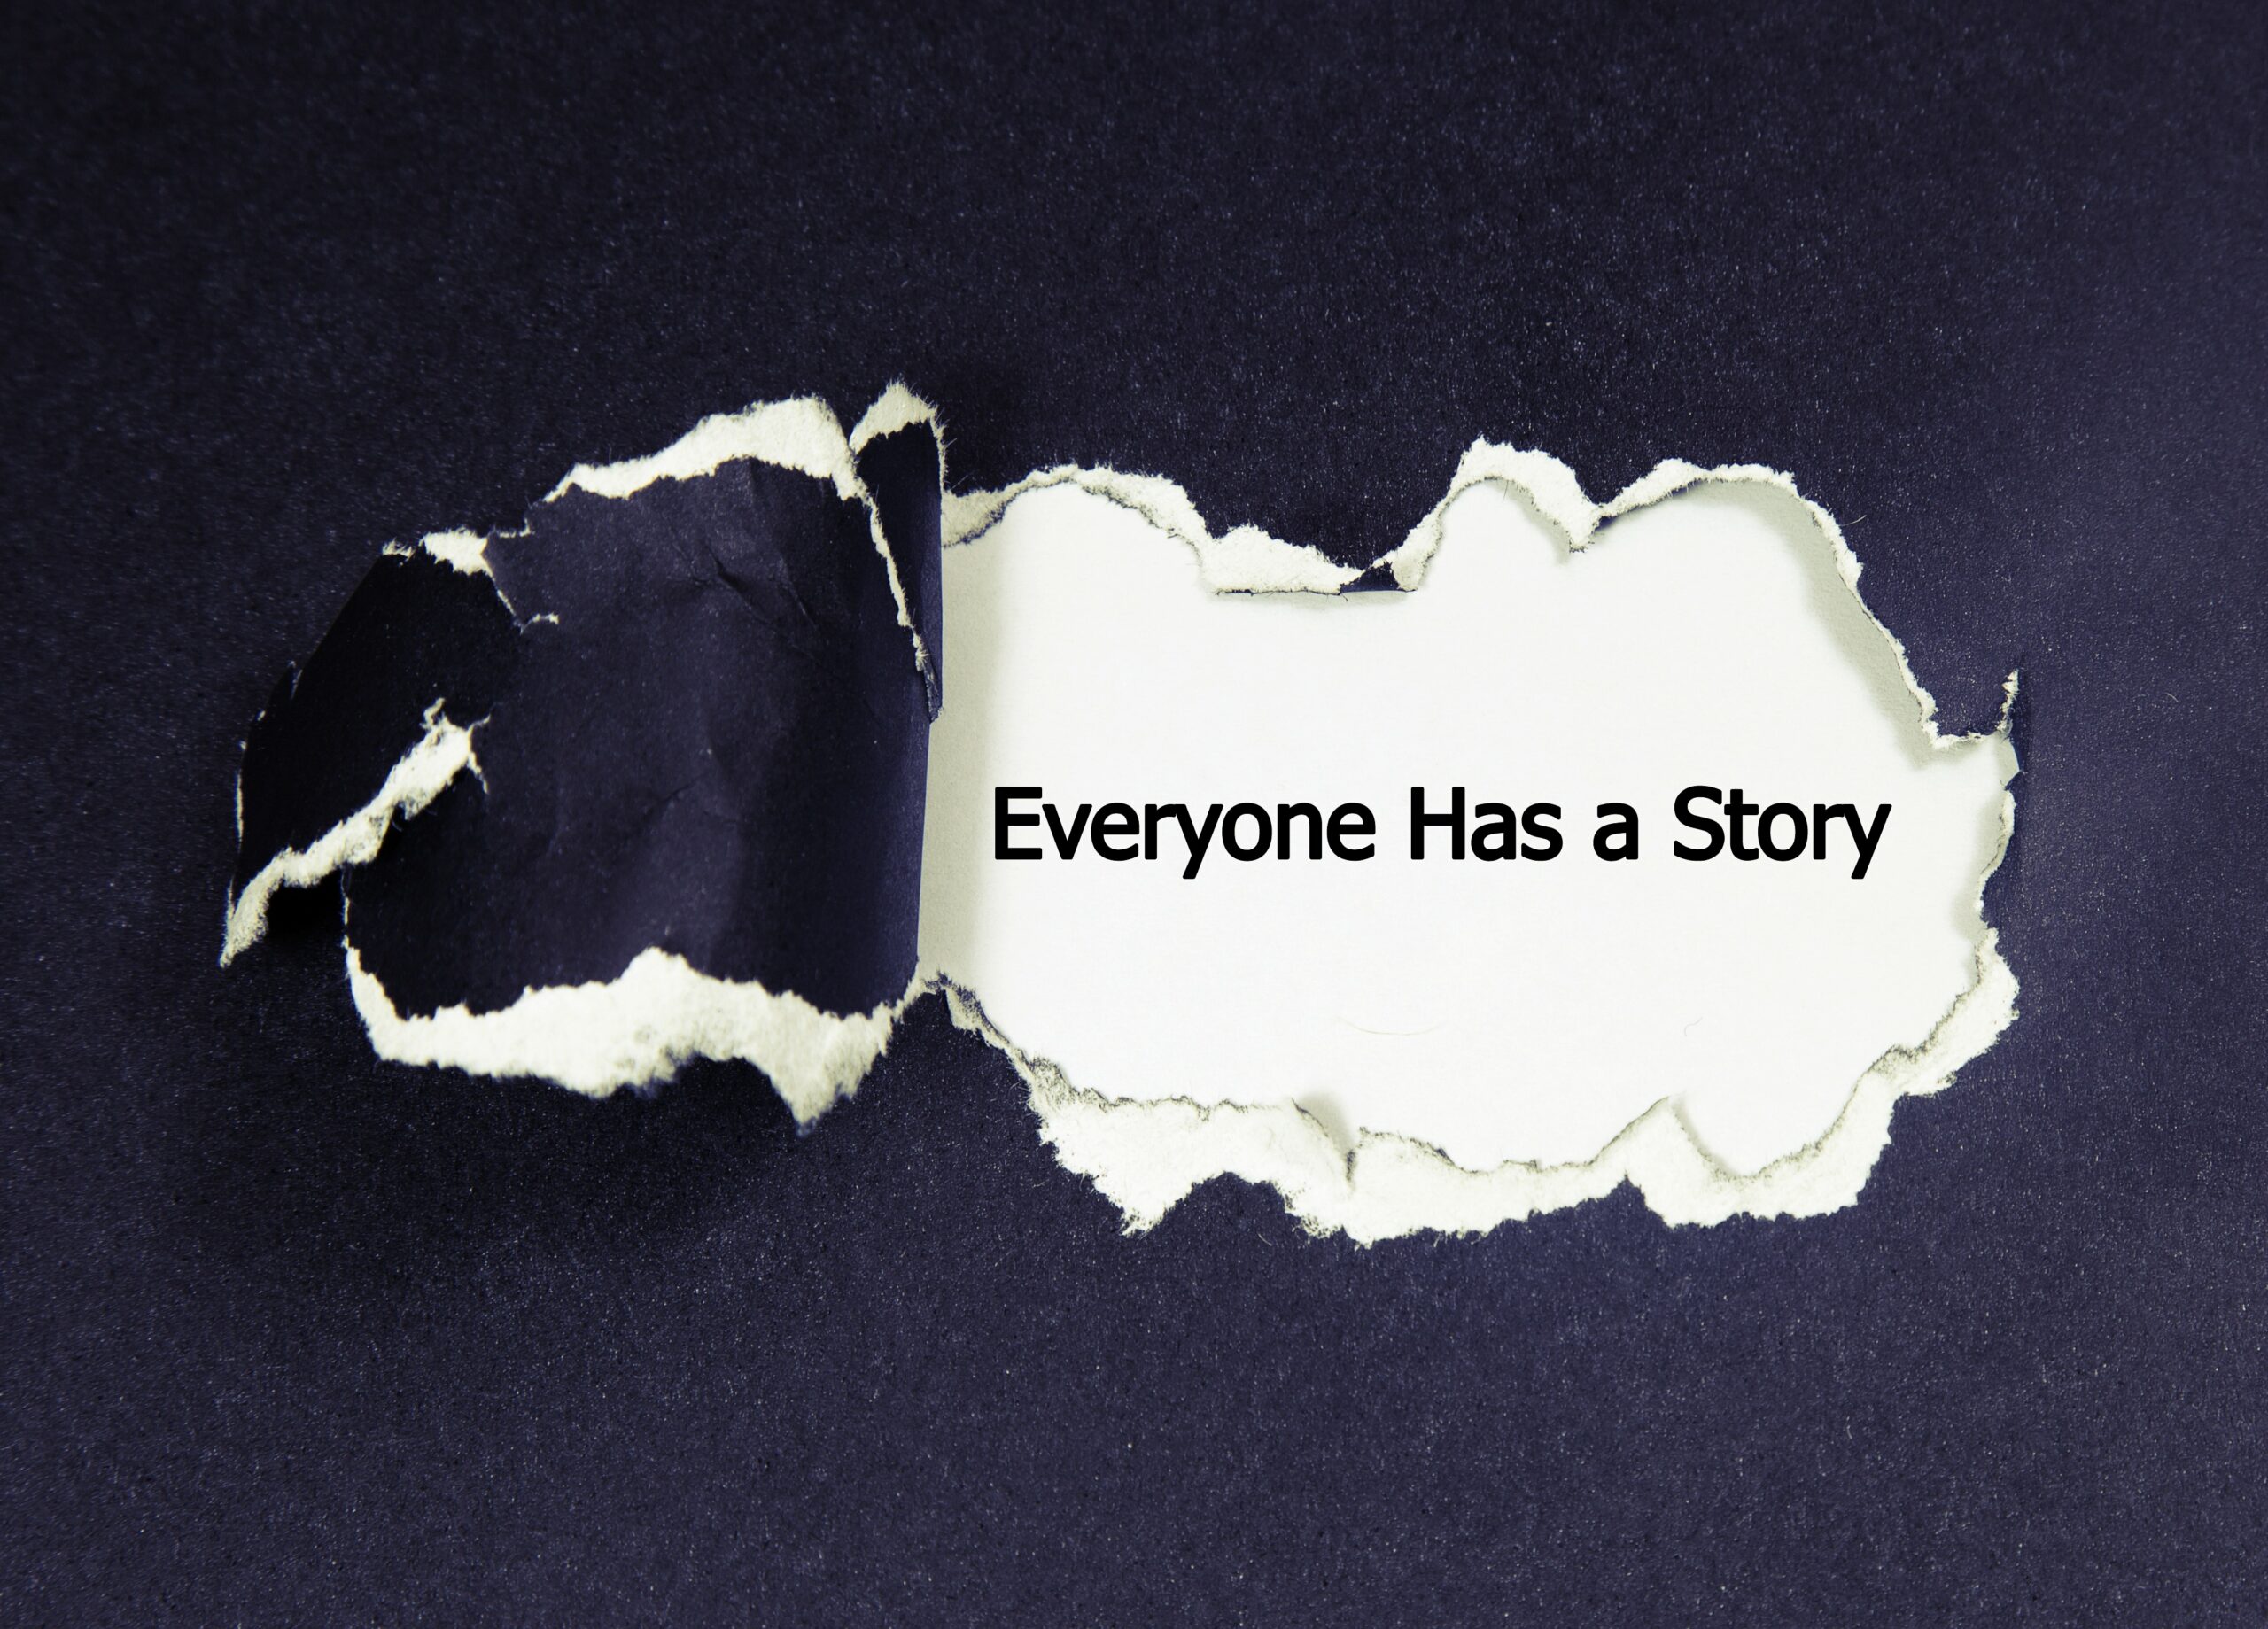 WELLNESS WEDNESDAY #102: Breaking Stigma With Story